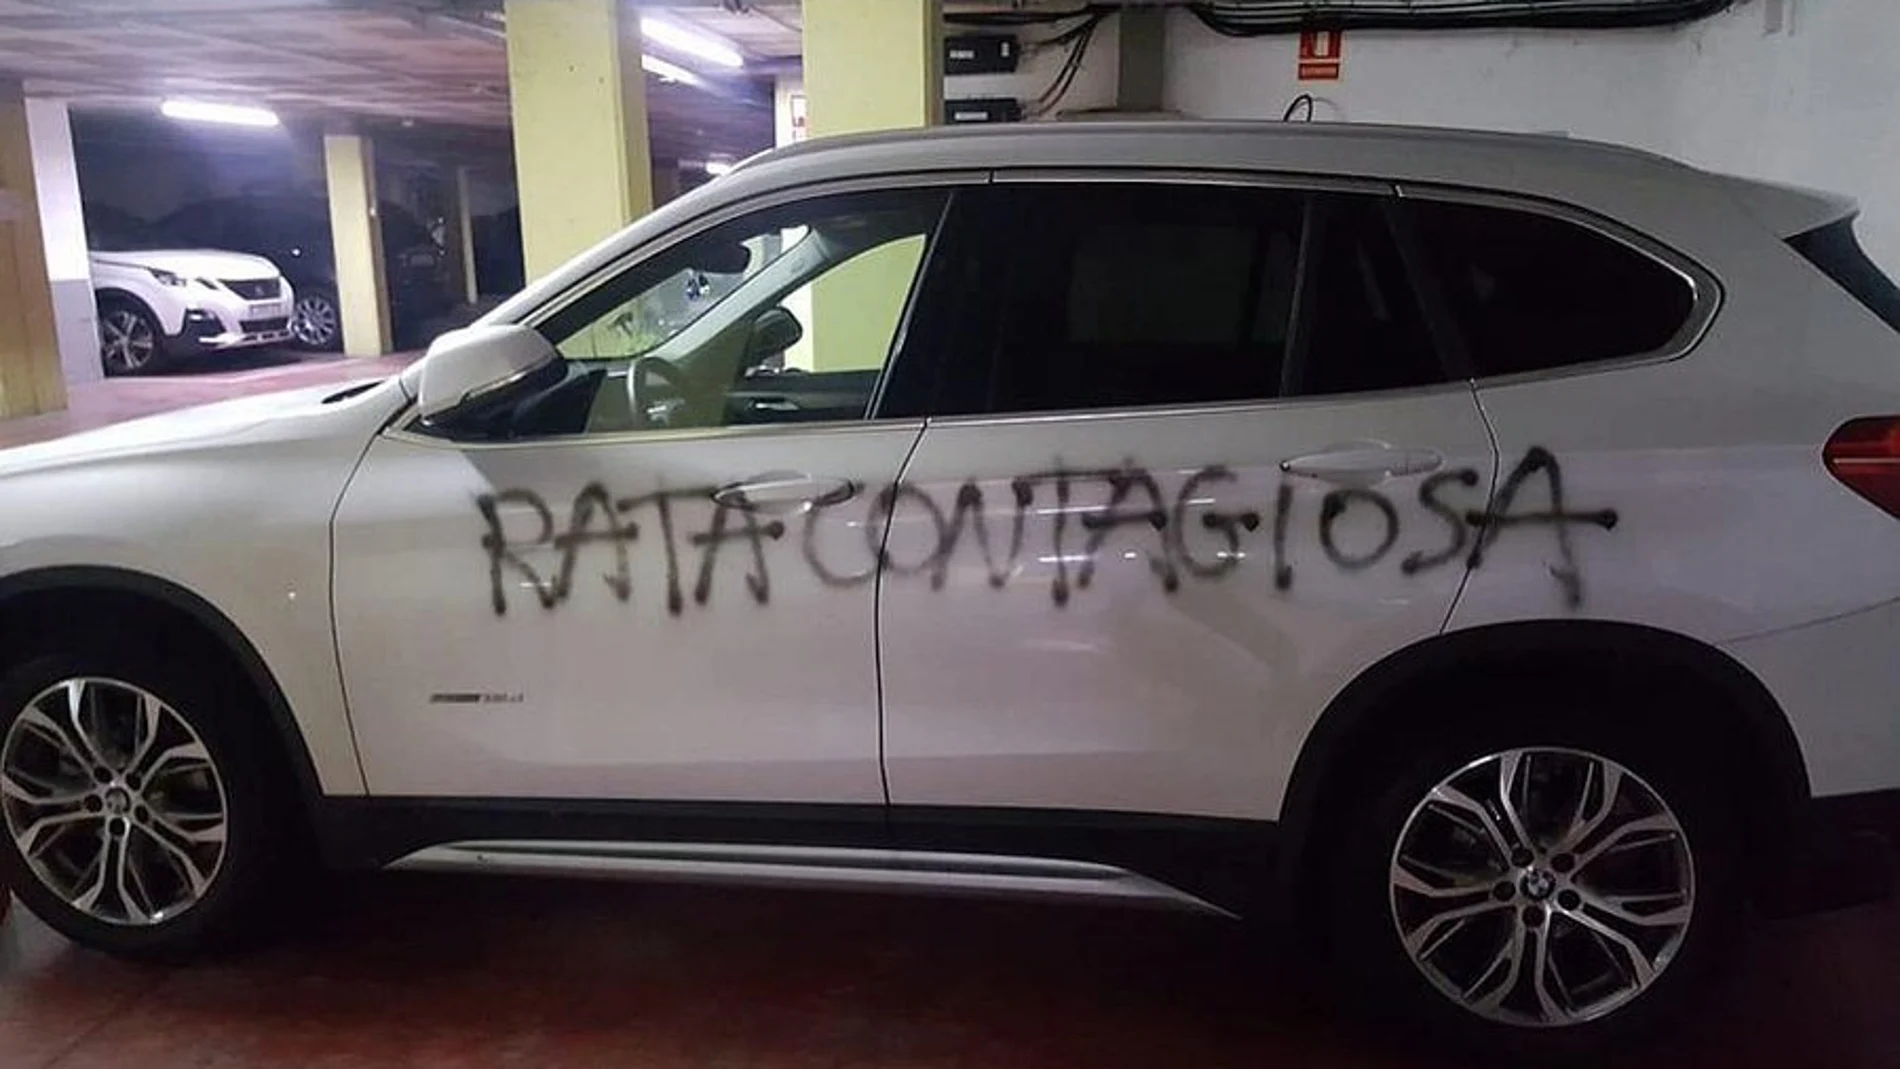 El mensaje que le han pintado a una ginecóloga de Barcelona en el coche